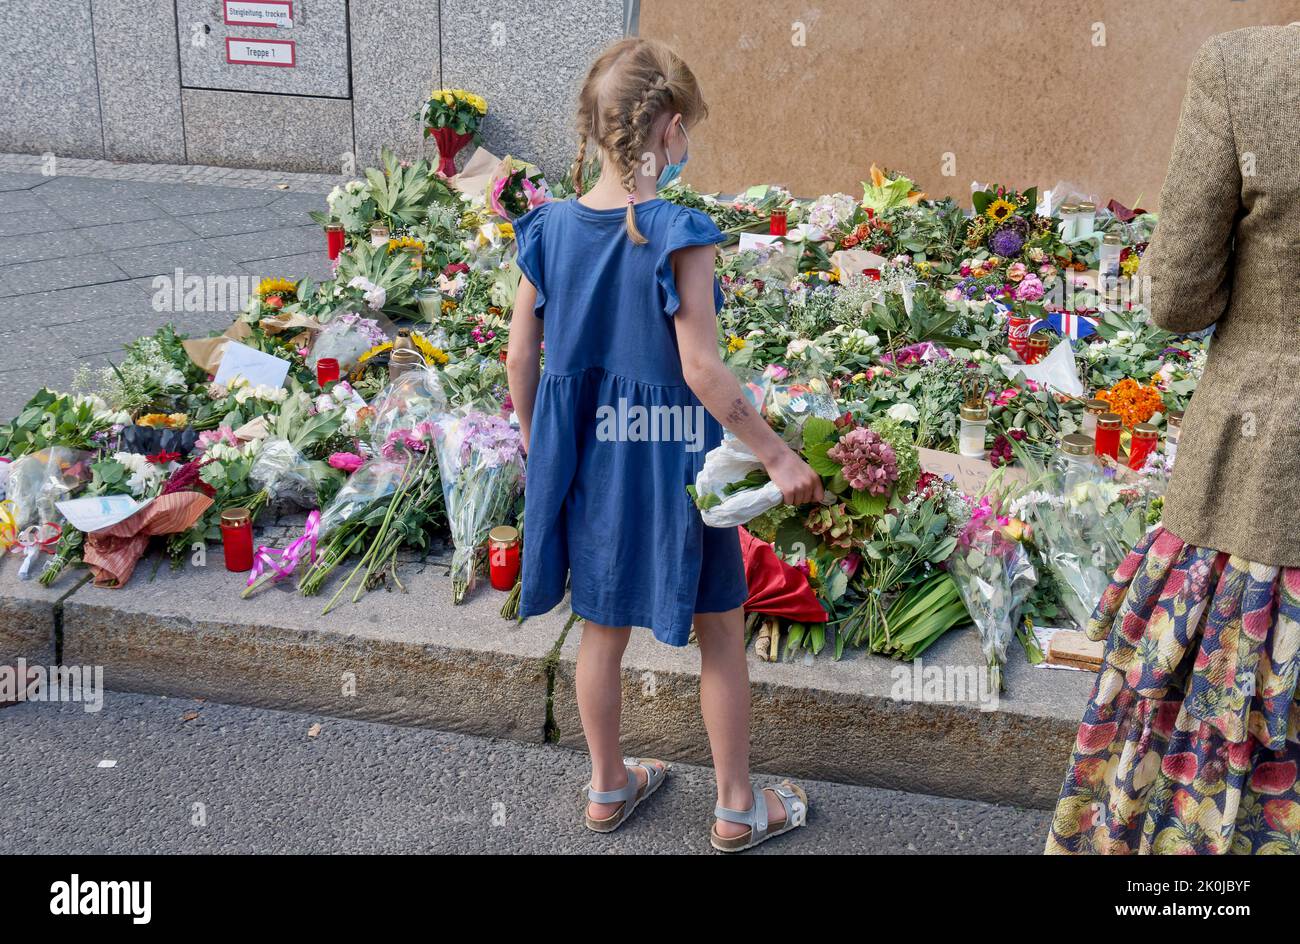 Beileidsbekundungen zum Tod von Königin Elizabeth II der Queen am 08.09.2022 . Blumen und Kerzen werden vor der britischen Botschaft in Berlin abge Stockfoto